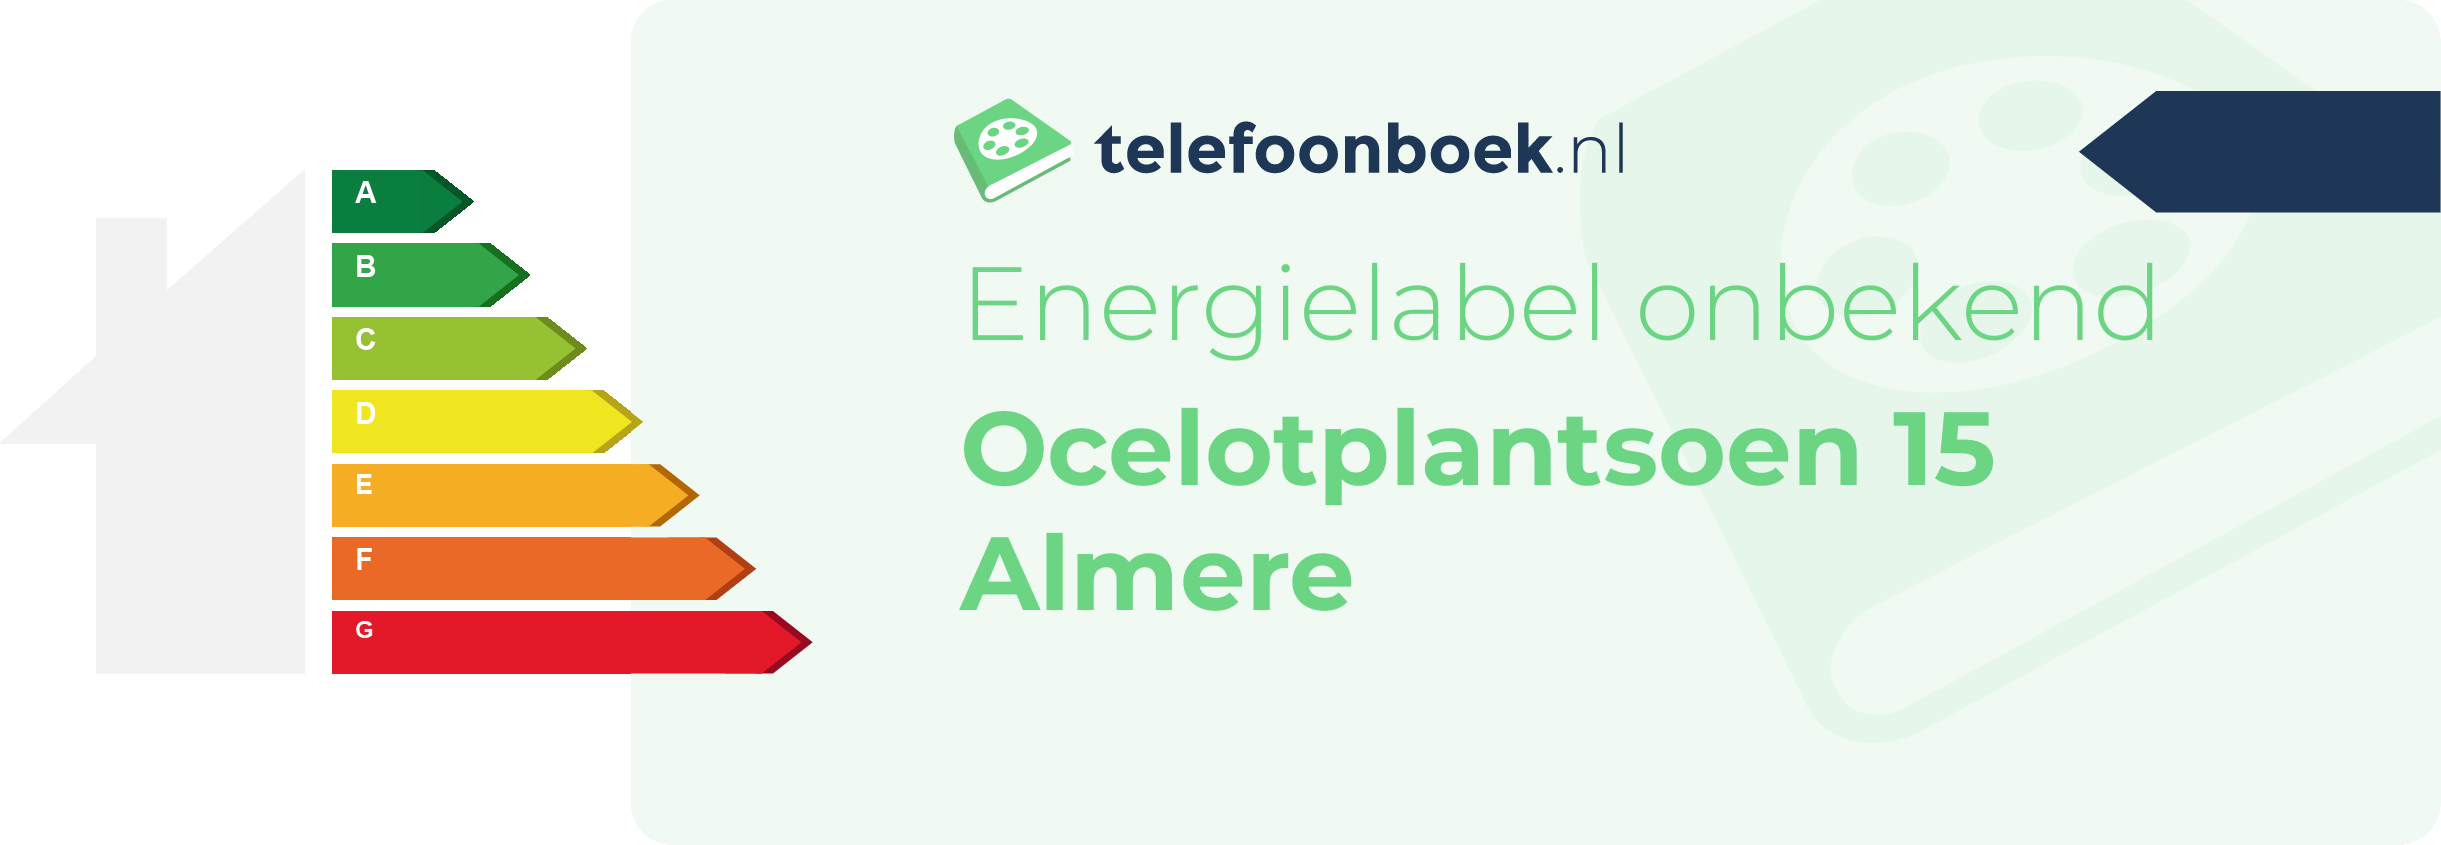 Energielabel Ocelotplantsoen 15 Almere